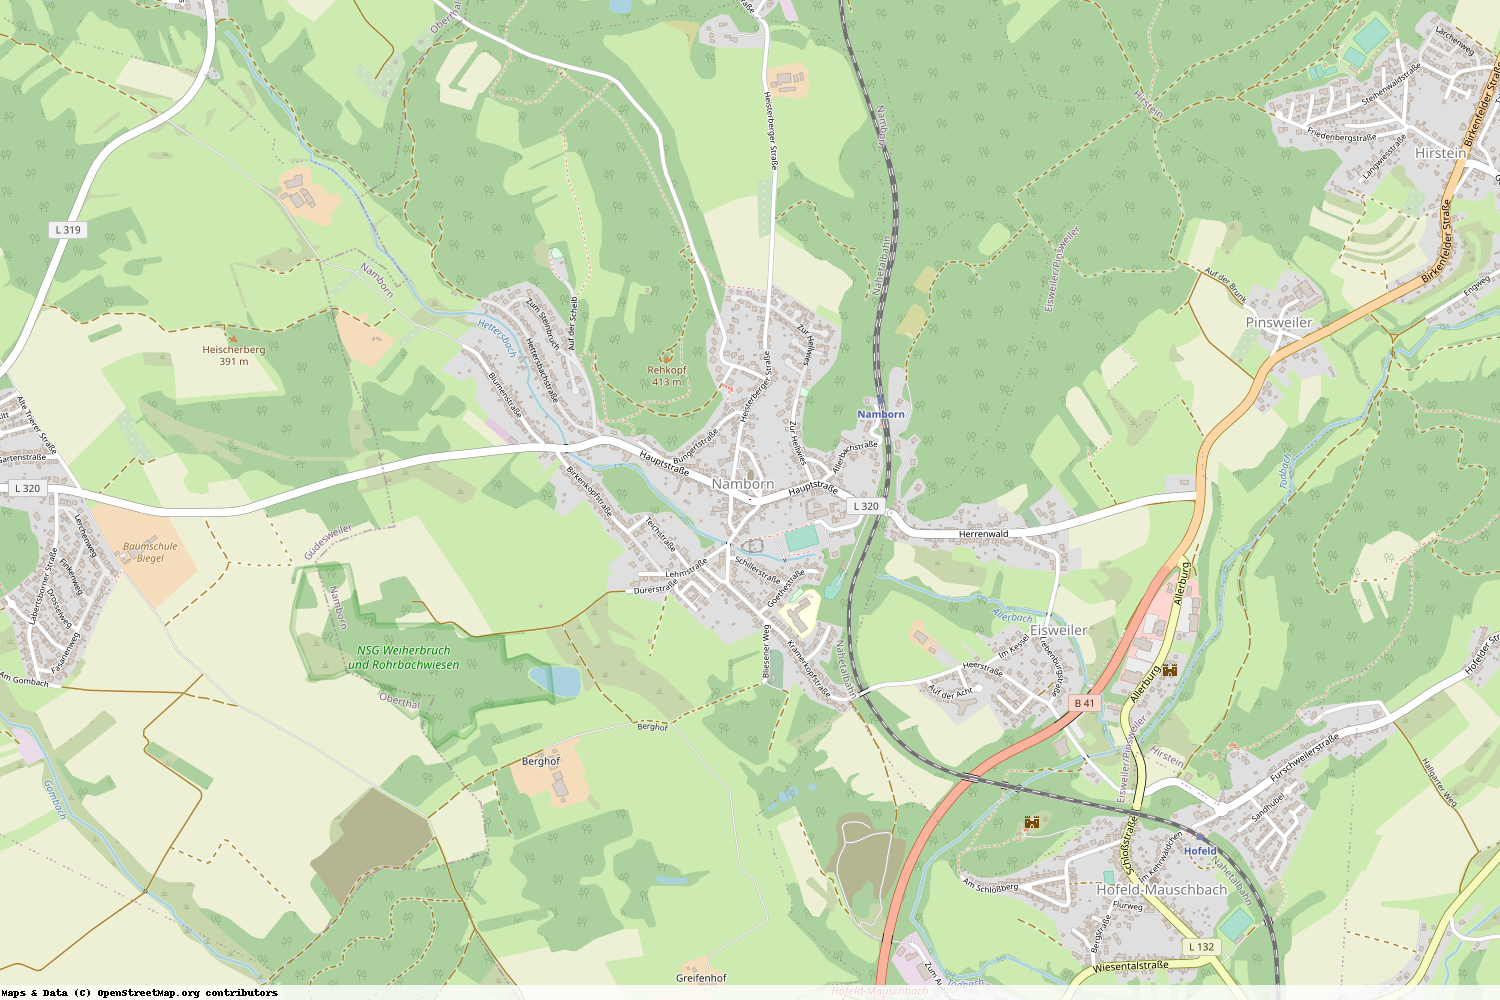 Ist gerade Stromausfall in Saarland - St. Wendel - Namborn?